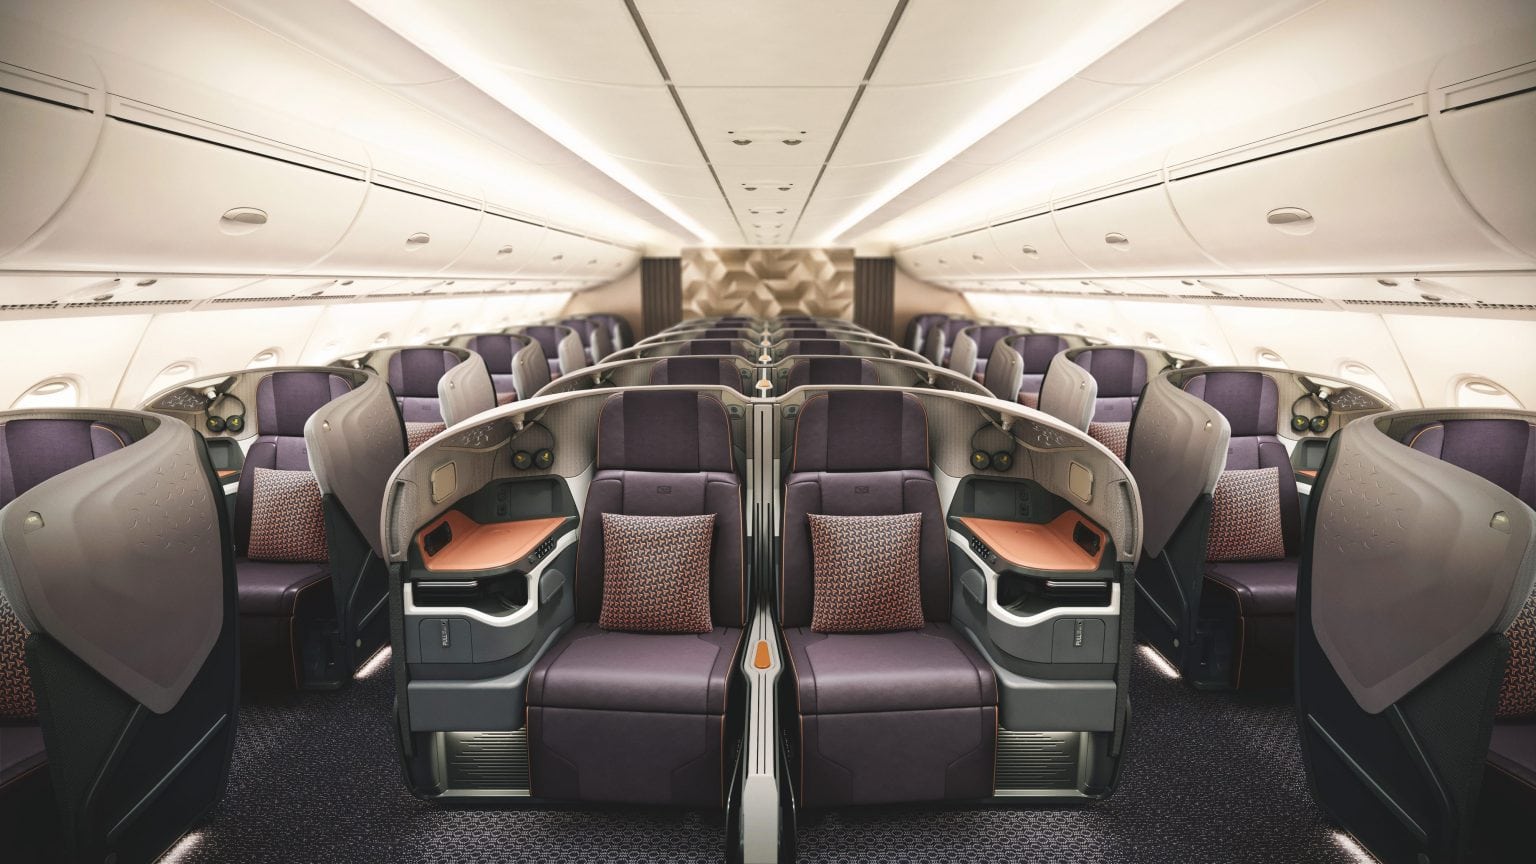 Singapore Airlines convierte el avión superjumbo A380 en un restaurante